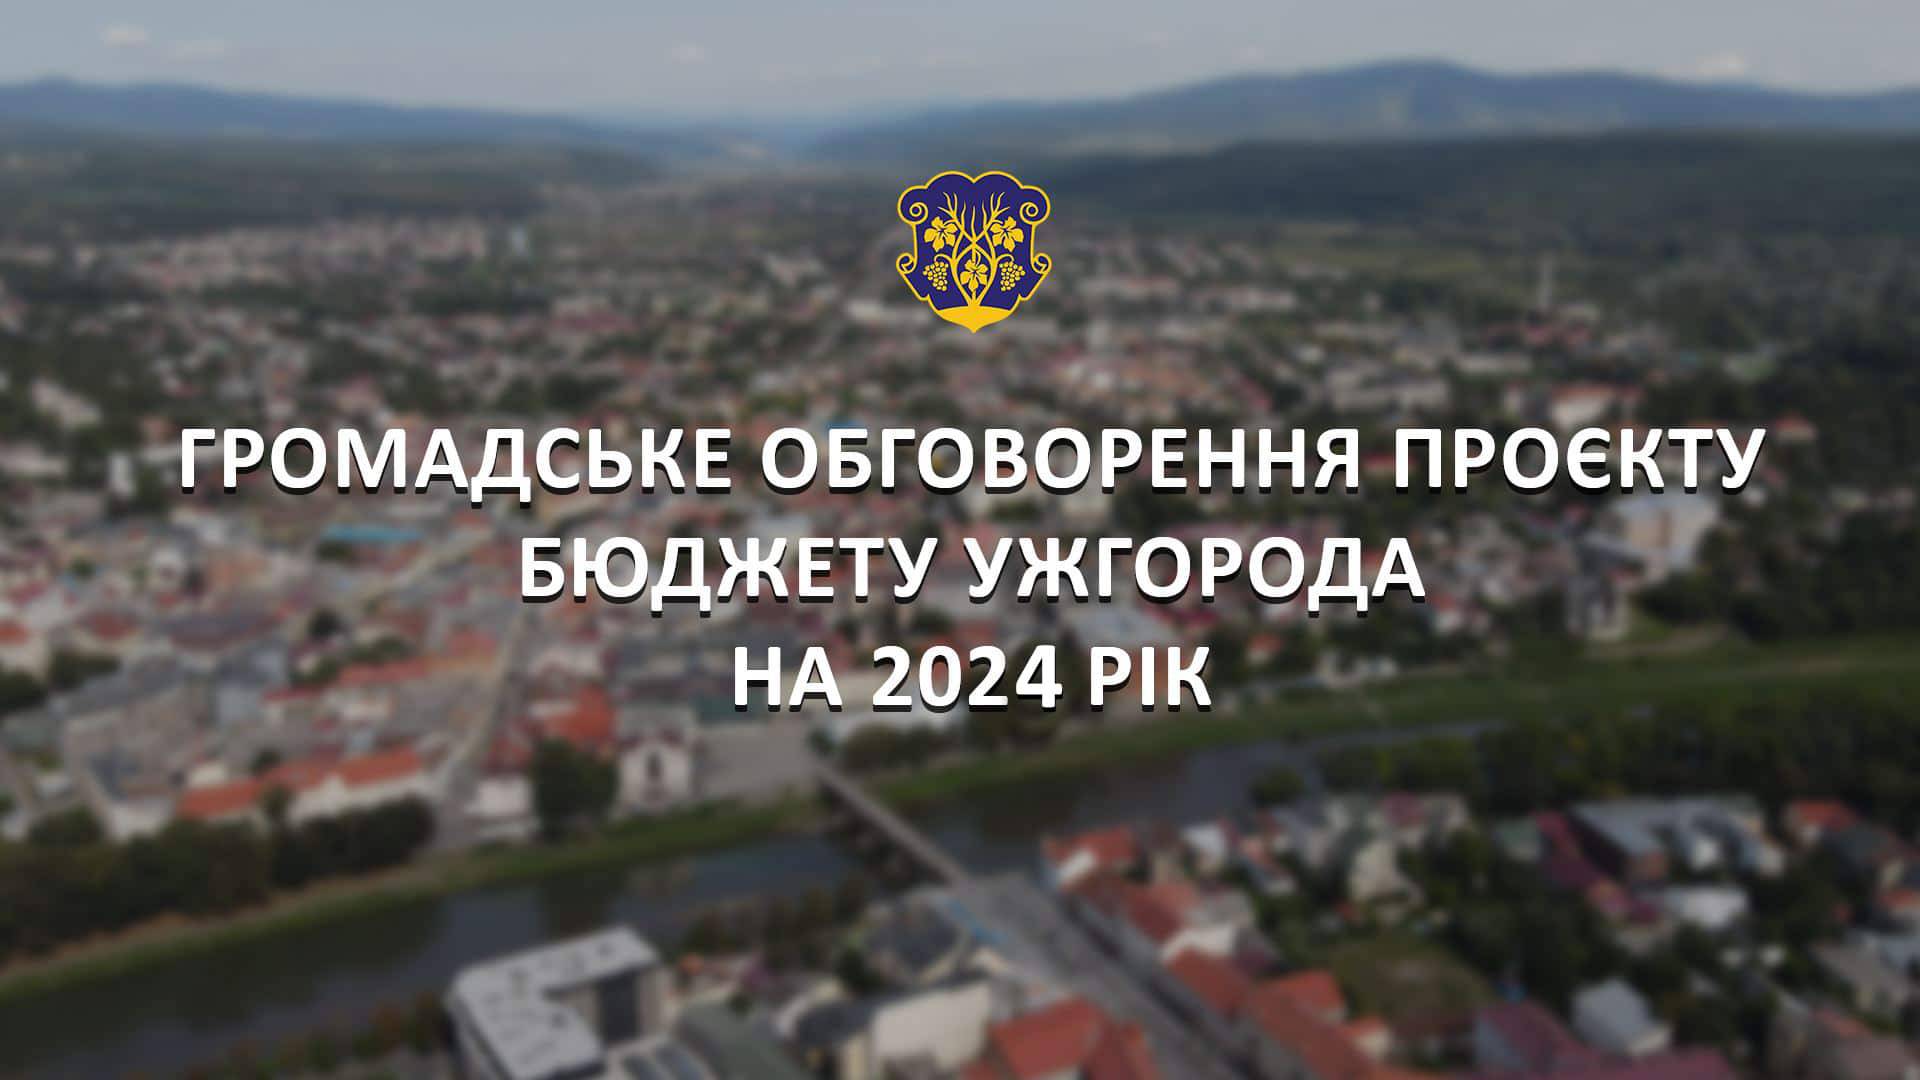 Відбудеться громадське обговорення проєкту бюджету Ужгородської міської територіальної громади на 2024 рік